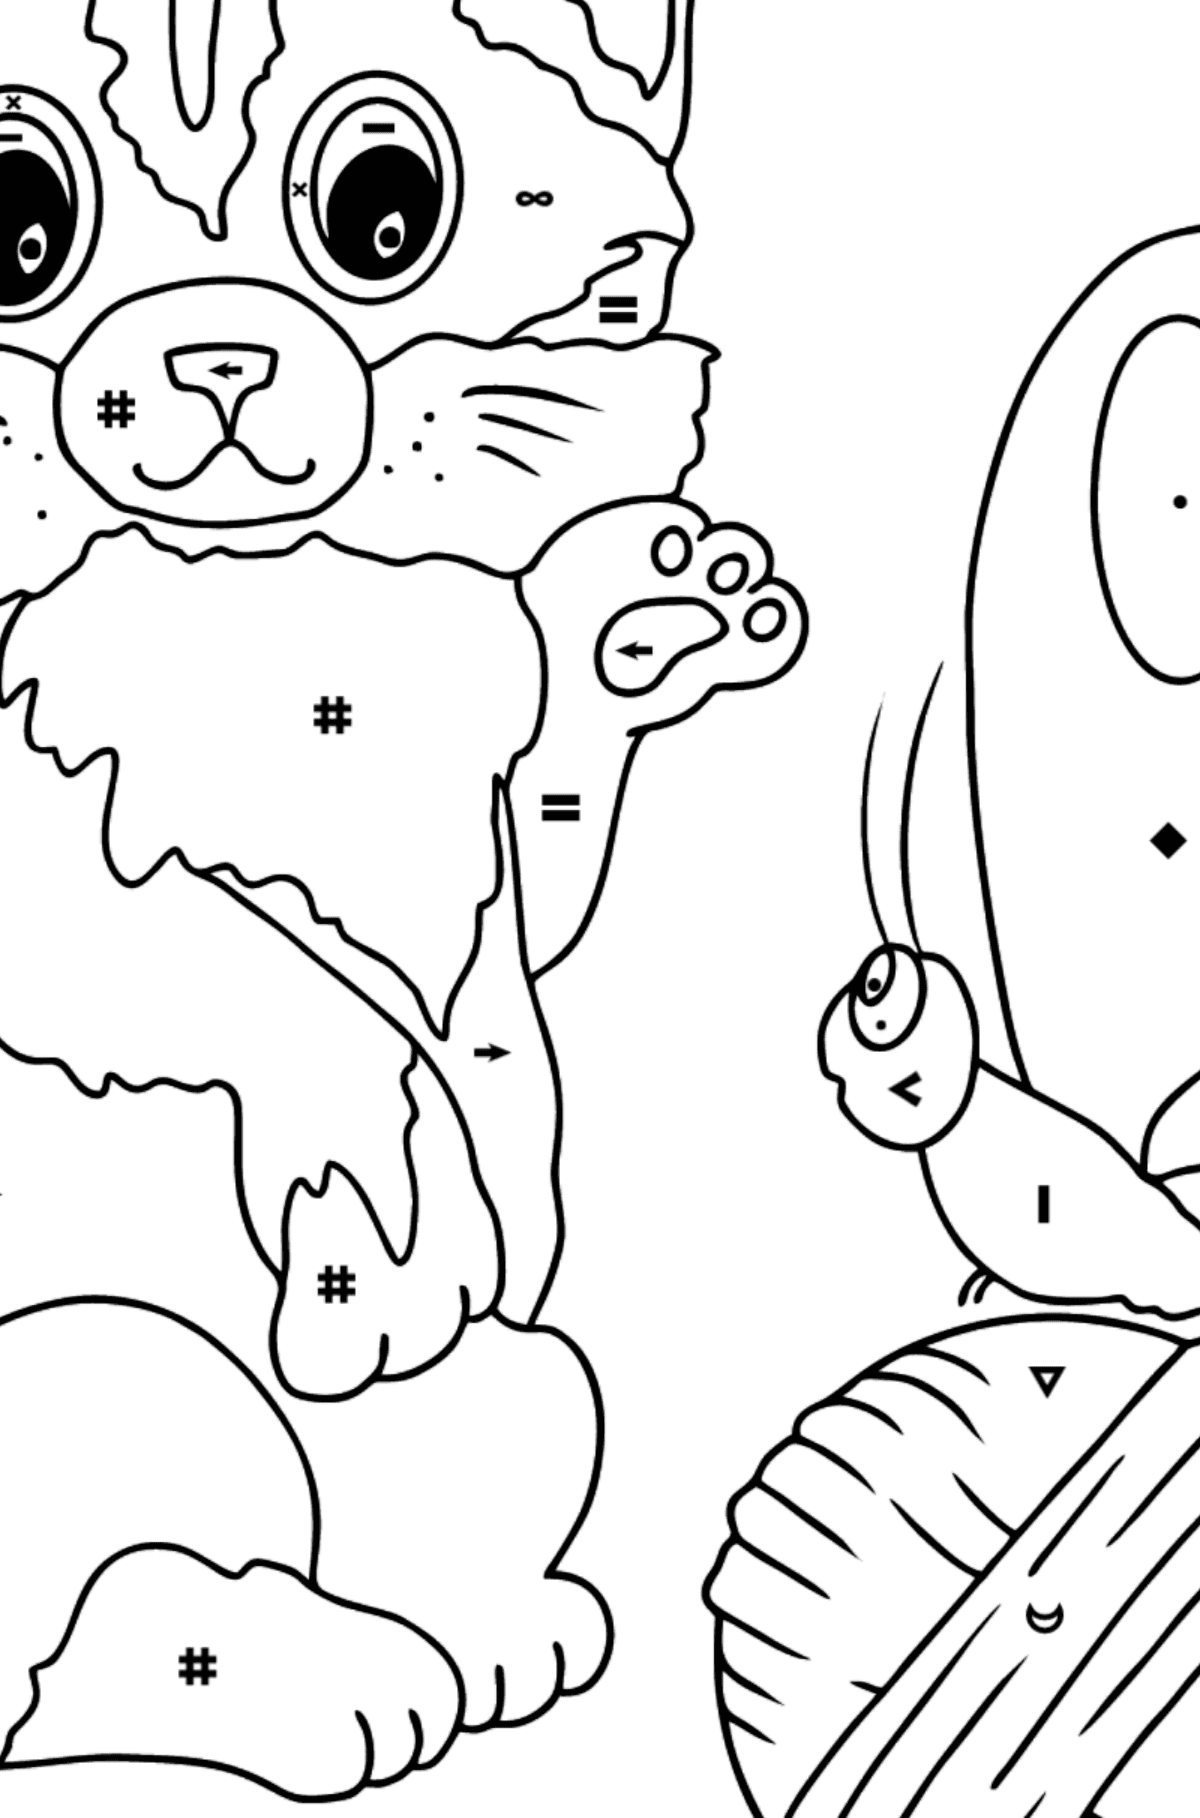 Kolorowanka Kot bawi się motylem - Kolorowanie według symboli dla dzieci